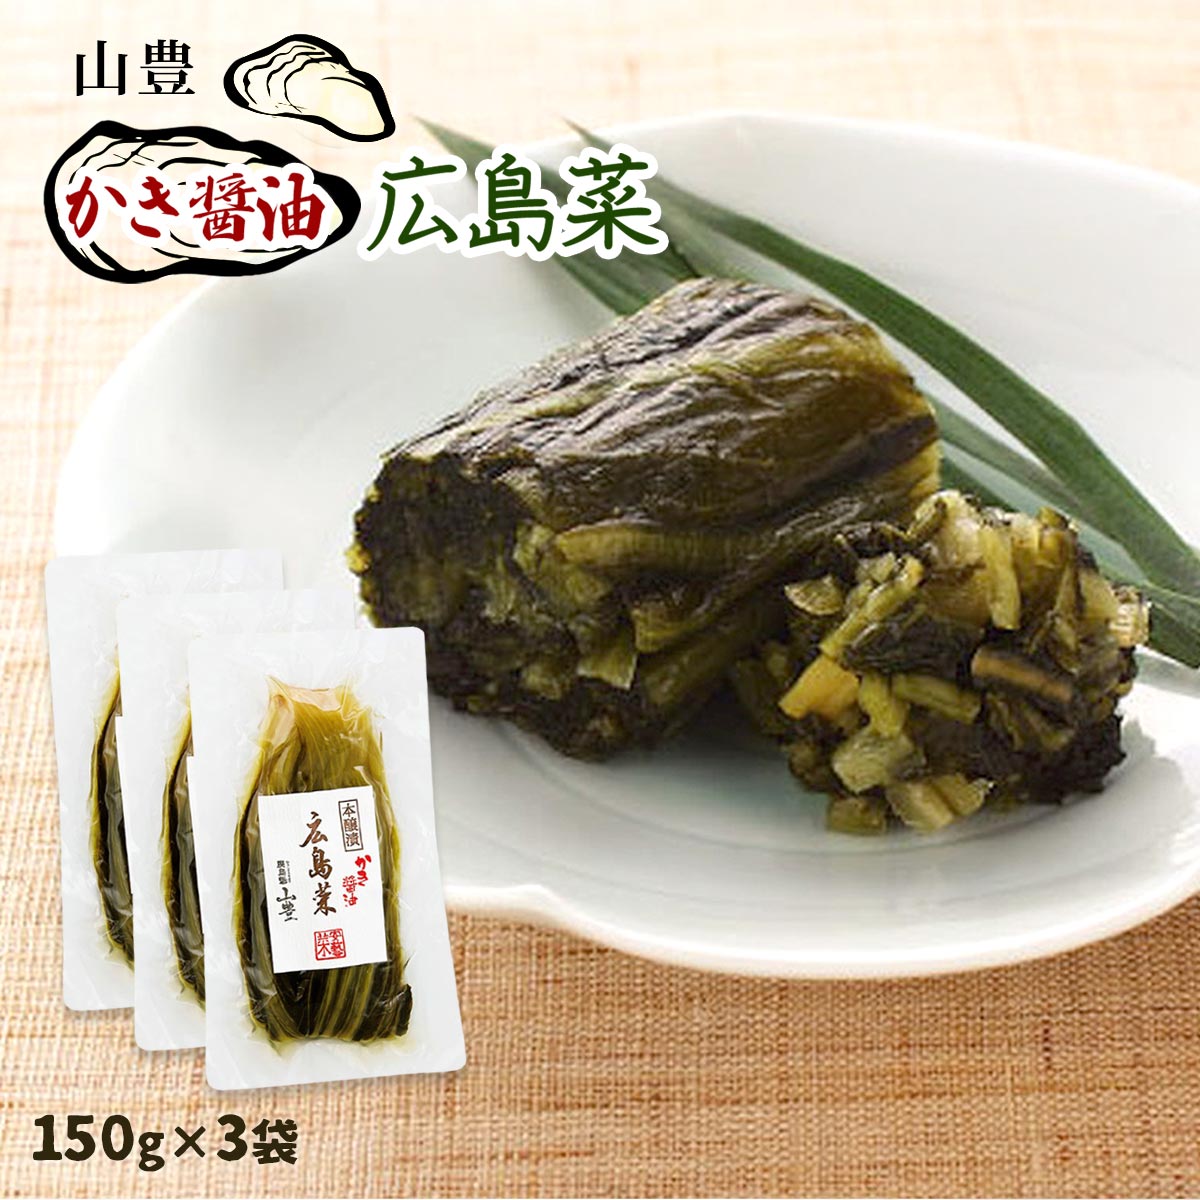 【商品特徴】3ヶ月以上じっくり漬け込んだ広島菜を使用しています。かき醤油を使用し、芳醇な香りと深いコクの味わいに仕上げました。合成着色料、保存料は使用しておりません。~広島菜とは~広島菜は、九州の高菜、信州の野沢菜と並ぶ三大漬菜の一つで、 広島県名産の伝統的な漬菜です。一株がとても大きく堂々たる風格で、漬物に加工すると程良い歯切れがあり、わさびと似た成分のピリッとした香味を持つ豊潤な風味が特徴です。広島の大きな自然が育んだ、素朴で上品なお漬け物です。~山豊の商品づくり~山豊の品質管理部門では、専任スタッフが理化学検査や官能検査をはじめとしたチェックを欠かさず行い、徹底した品質管理をしております。また、JAS(日本農林規格)の認定工場に指定、広島県食品自主衛生管理取得など安心安全な製品作りに努めております。 商品説明県名 原材料 広島菜、漬け原材料【発酵調味料、かつおだし、食塩、しょうゆ、梅酢、砂糖、魚醤、寒天、かきエキス、香辛料】、調味料(アミノ酸等)、(原材料の一部に小麦を含む) サイズ 16×2×24(mm) 原産国 - 内容量 150g×3 アレルギー表示 小麦 温度帯 常温 メーカー名 株式会社山豊広島県広島市安佐南区伴東町79-2